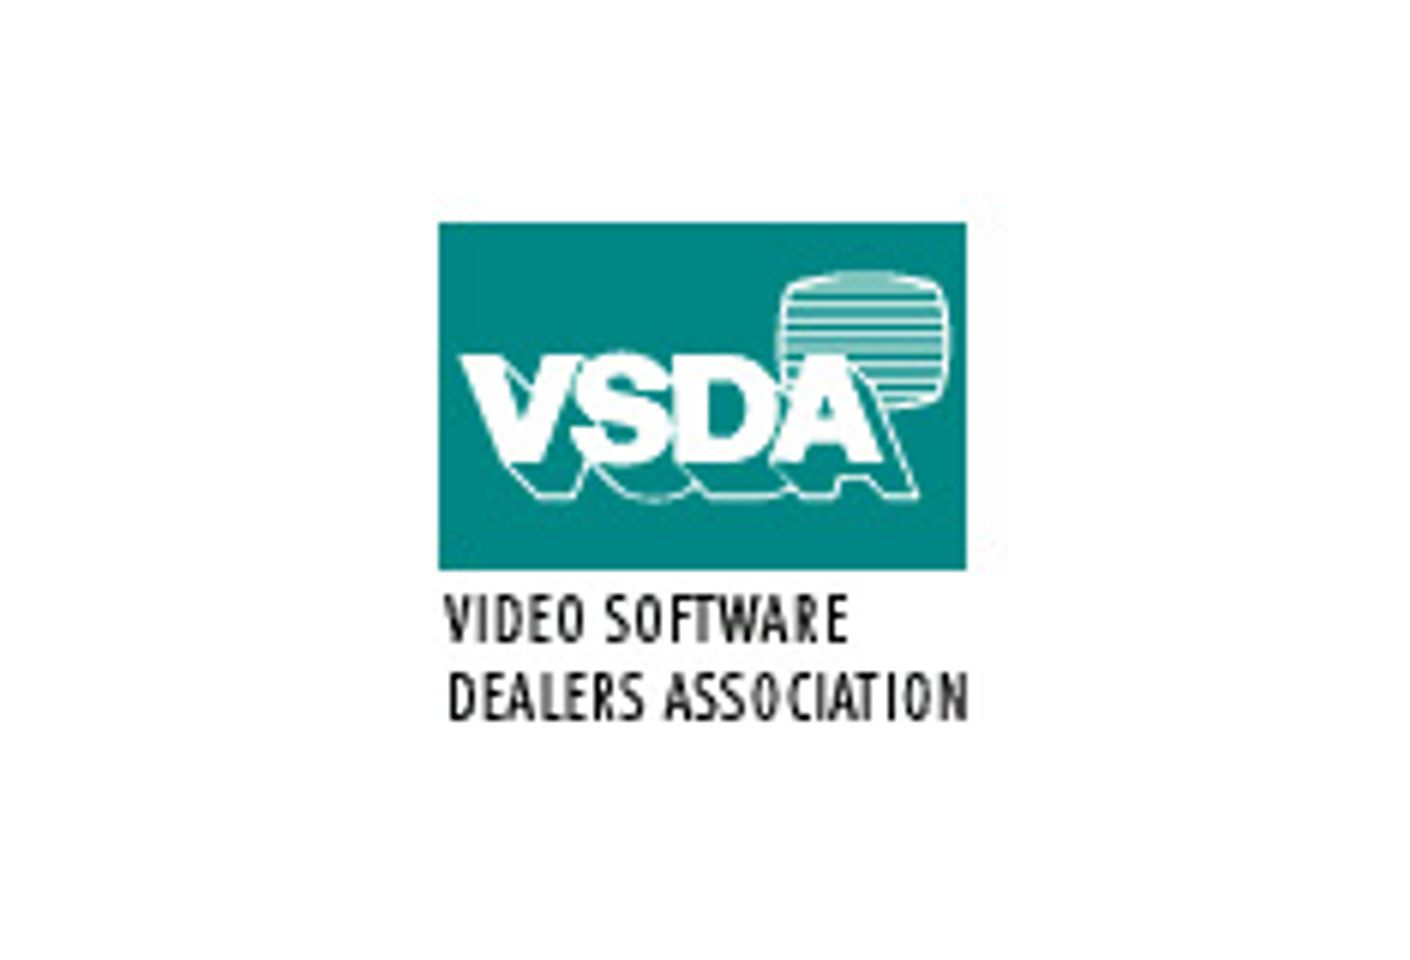 Richard Lewis to Host VSDA Awards